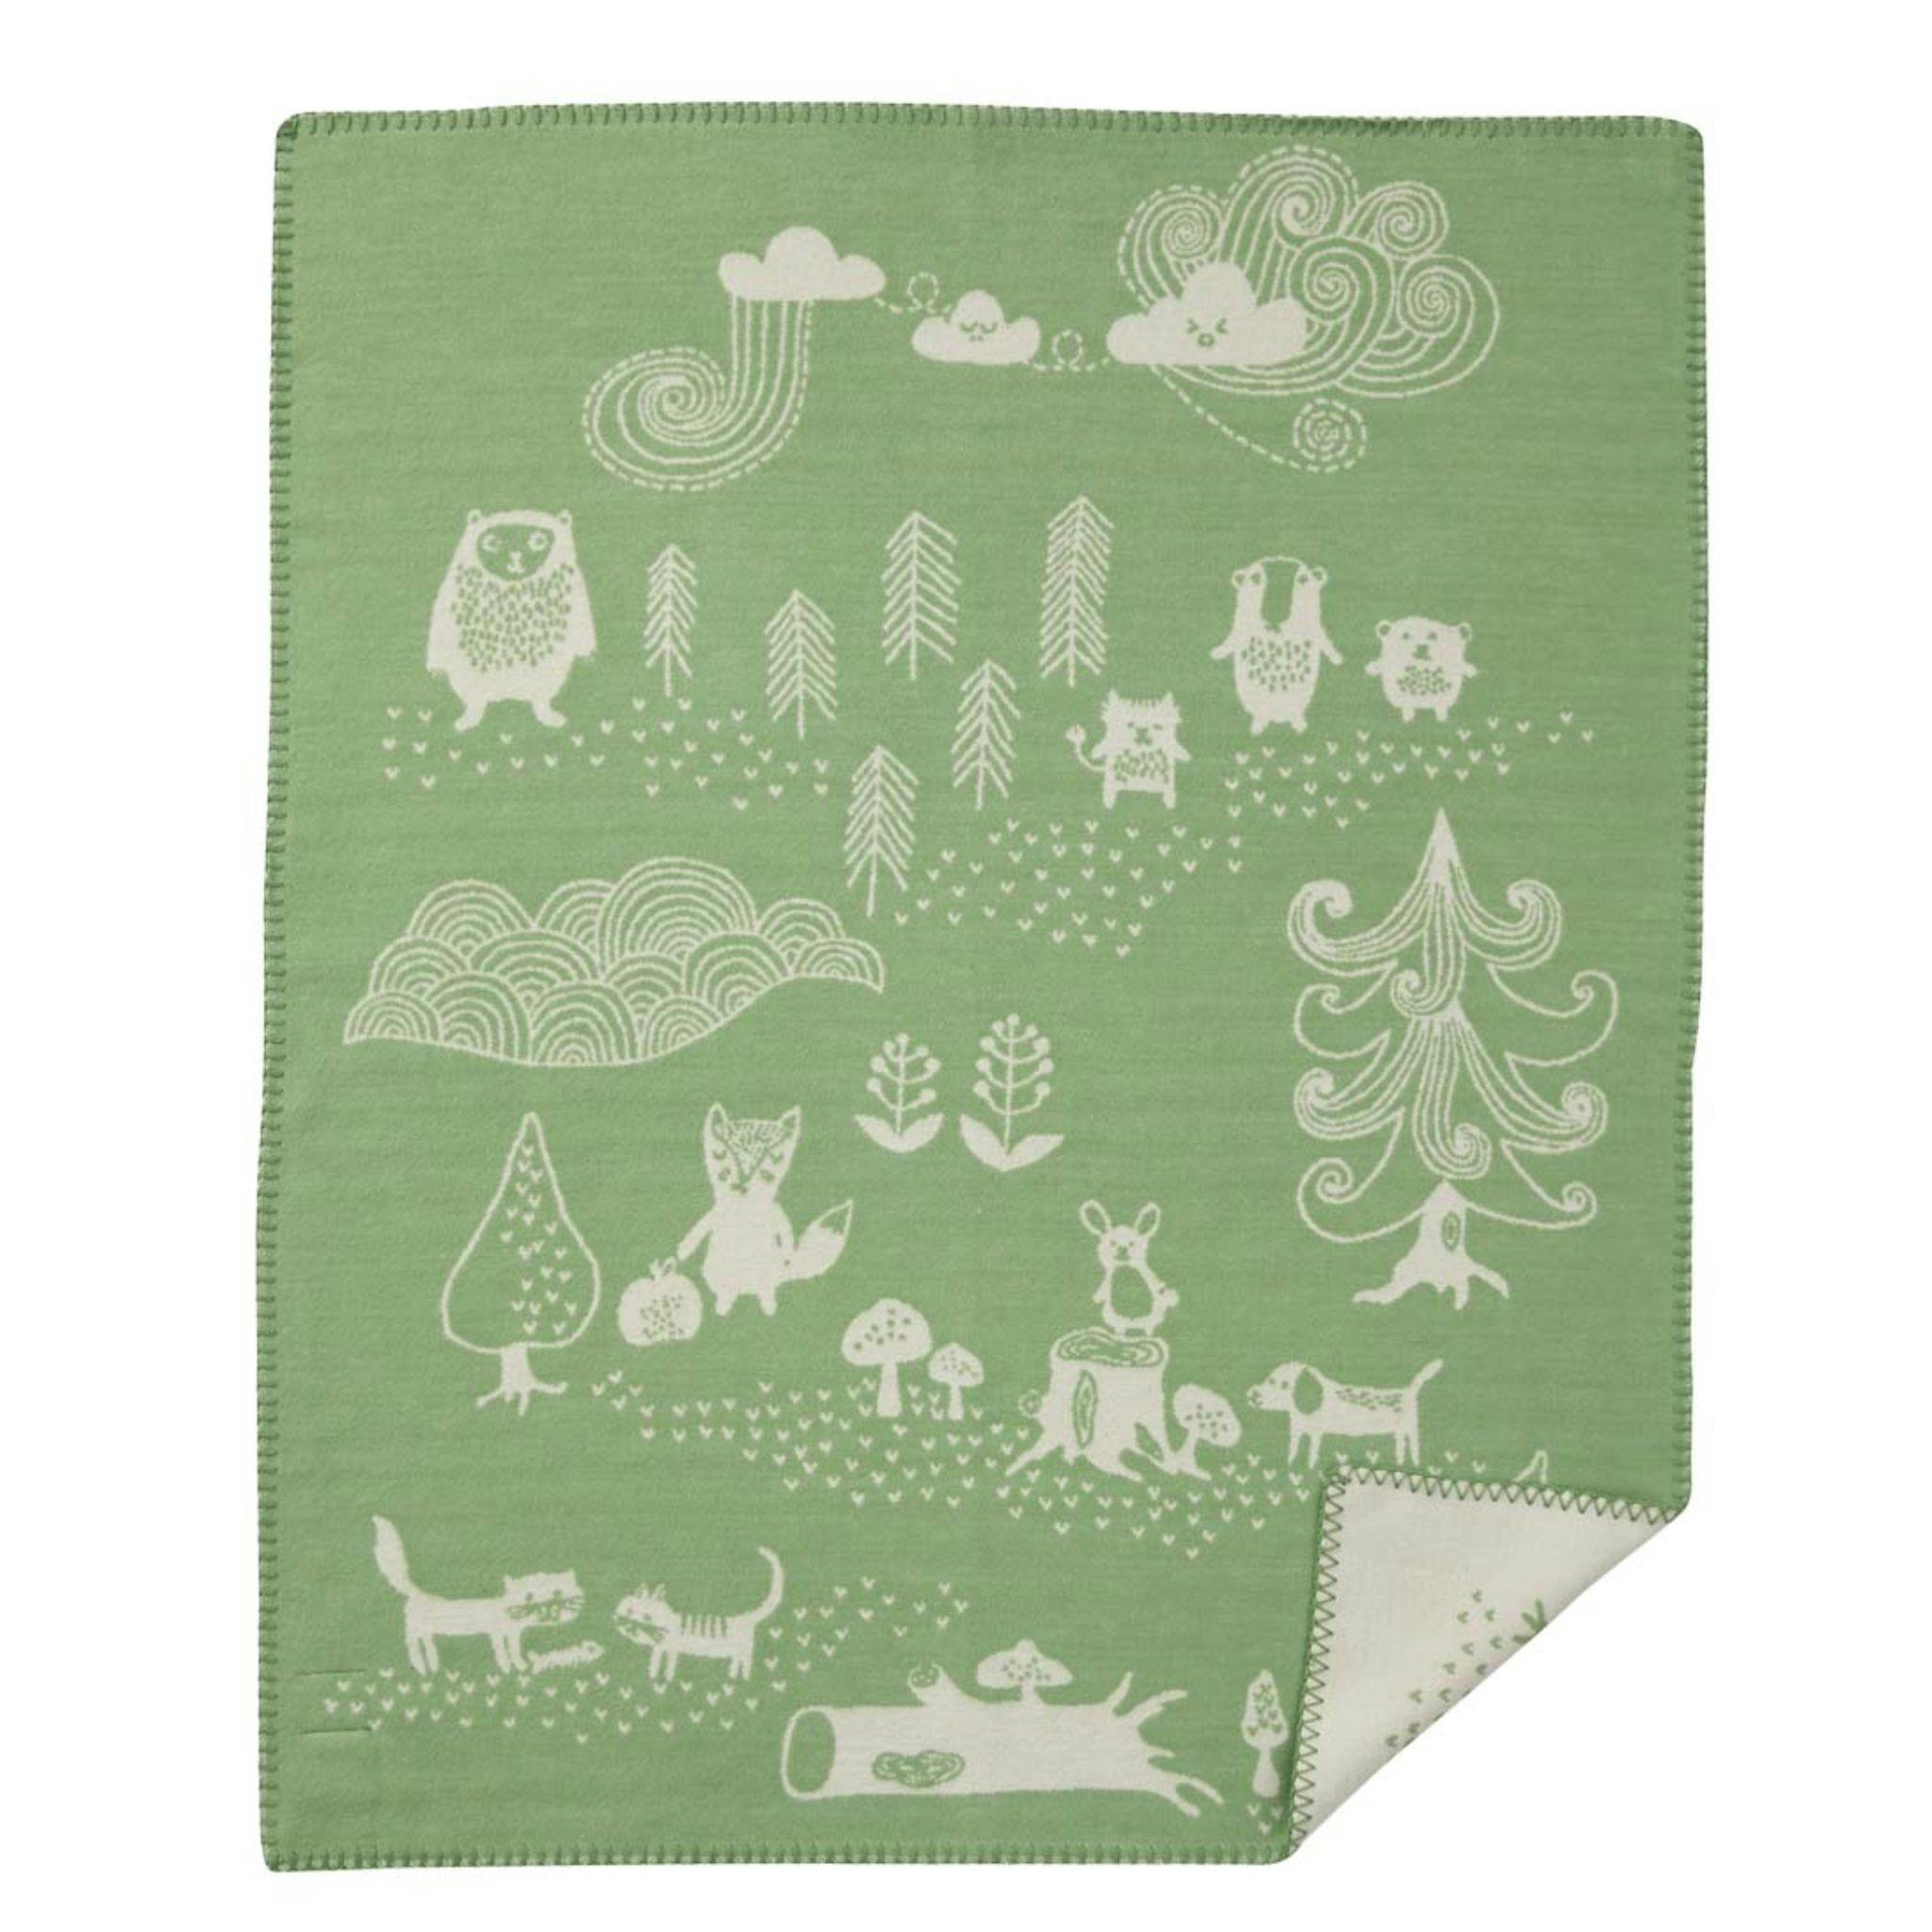 Finaste filten till ditt barn filten little bear i grönt kommer från Klippan.